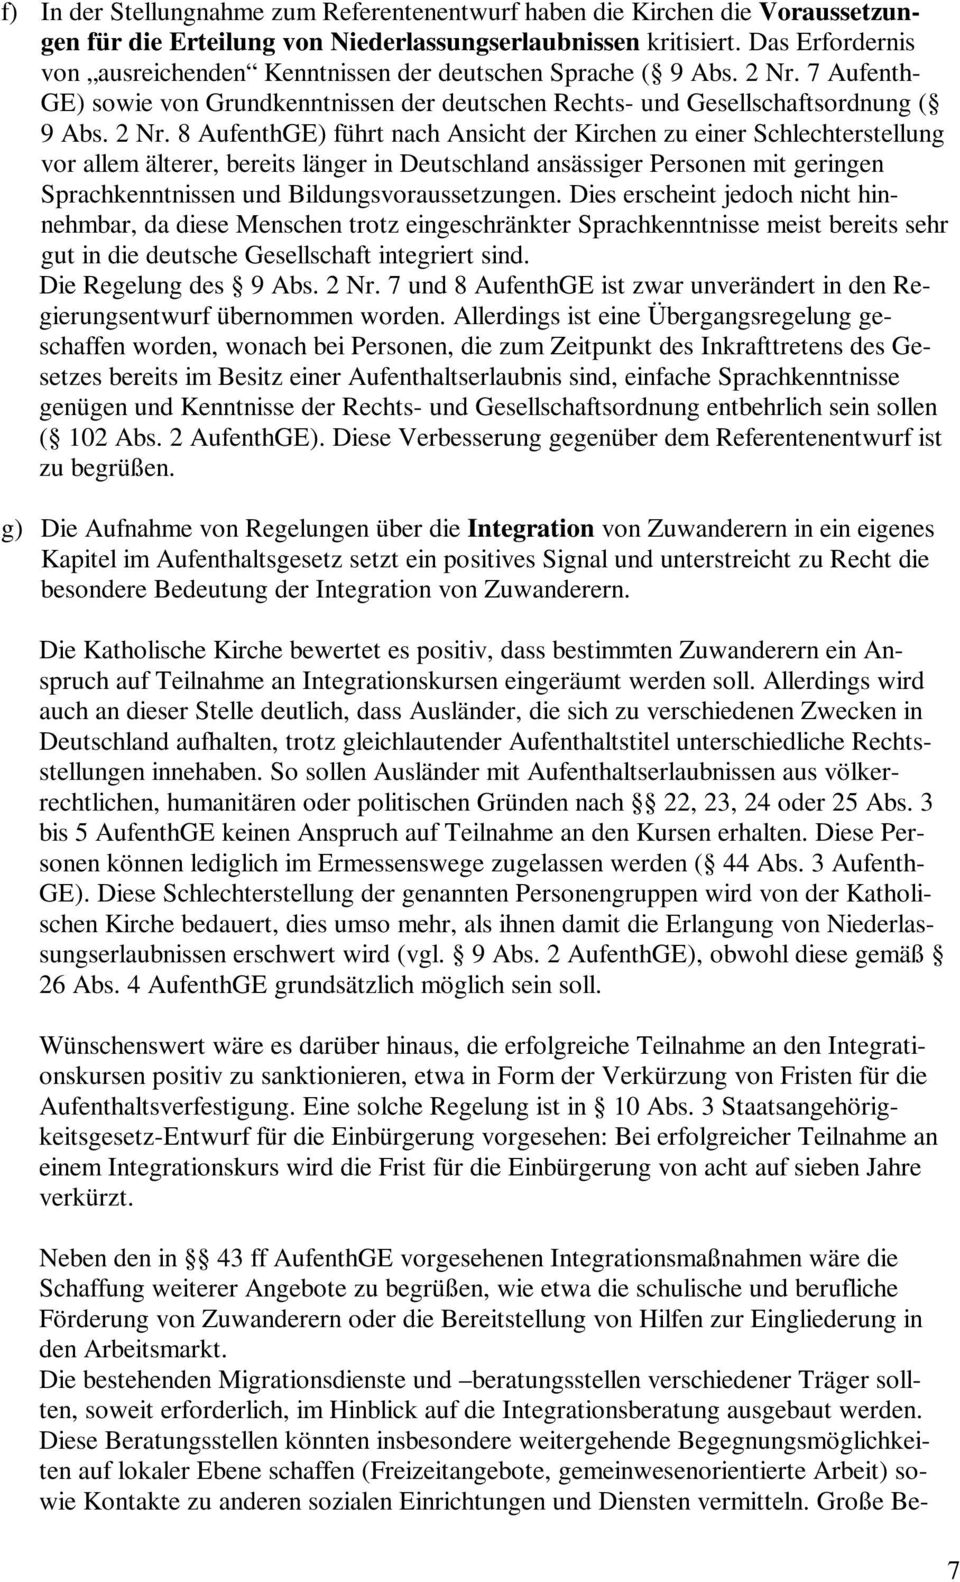 7 Aufenth- GE) sowie von Grundkenntnissen der deutschen Rechts- und Gesellschaftsordnung ( 9 Abs. 2 Nr.